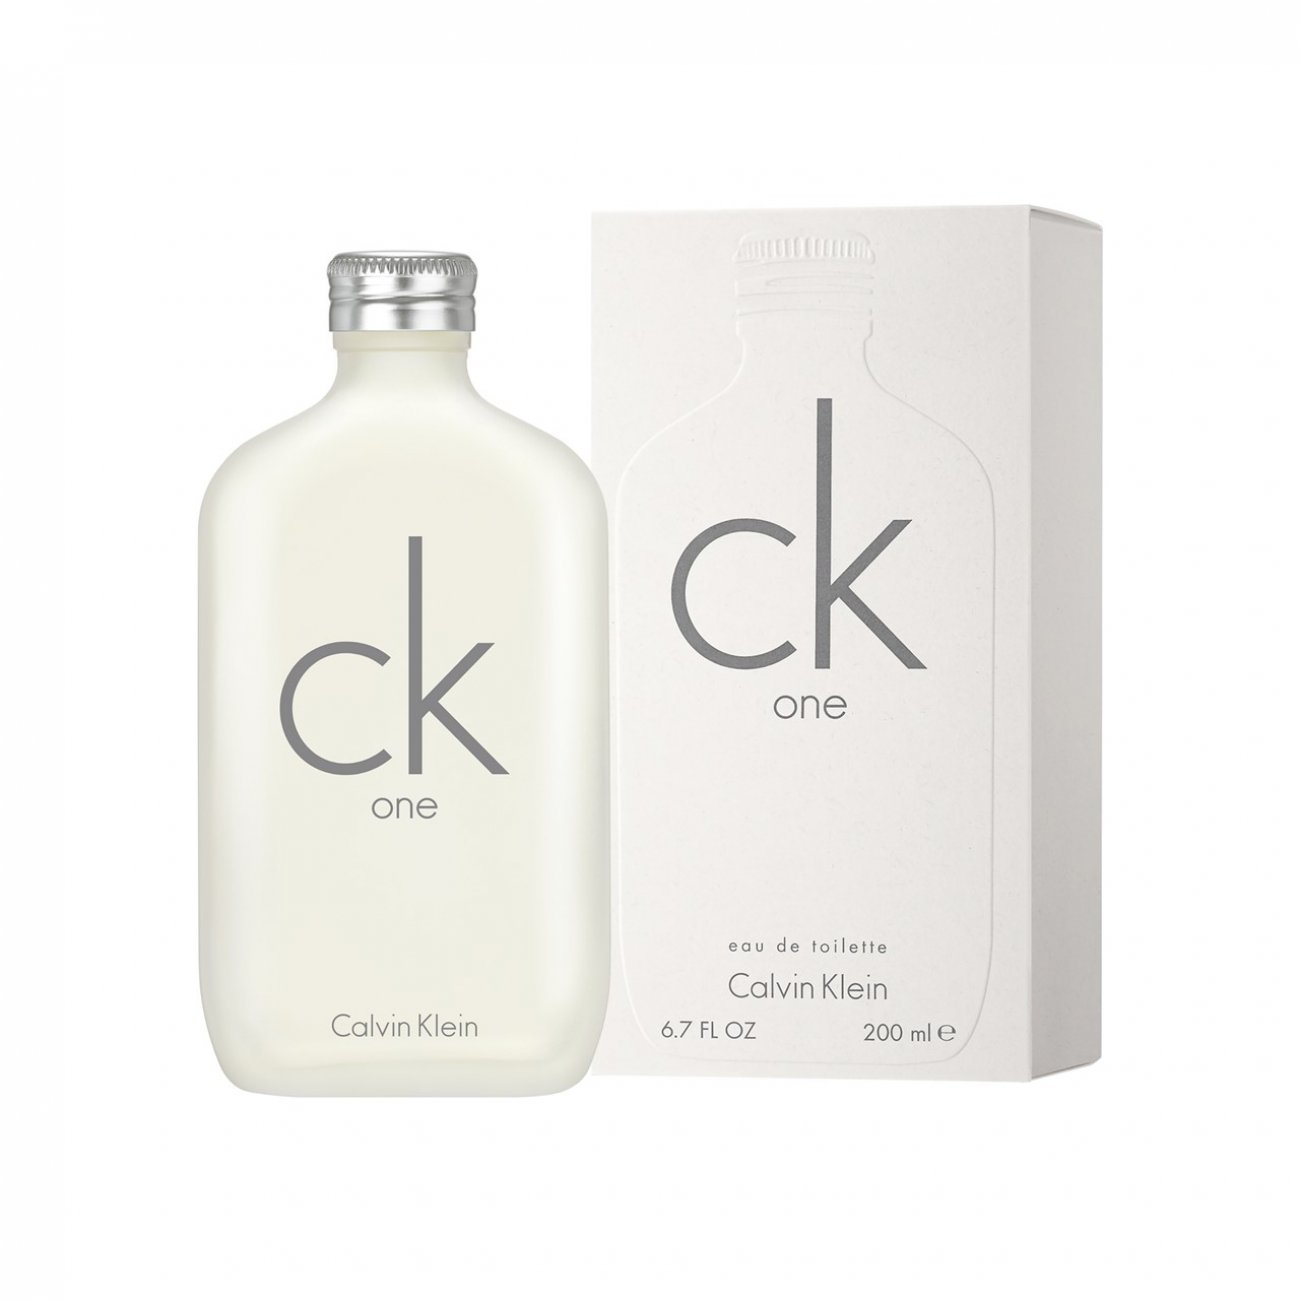 CK make up  Calvin klein makeup, Best fragrance for men, Perfume brands